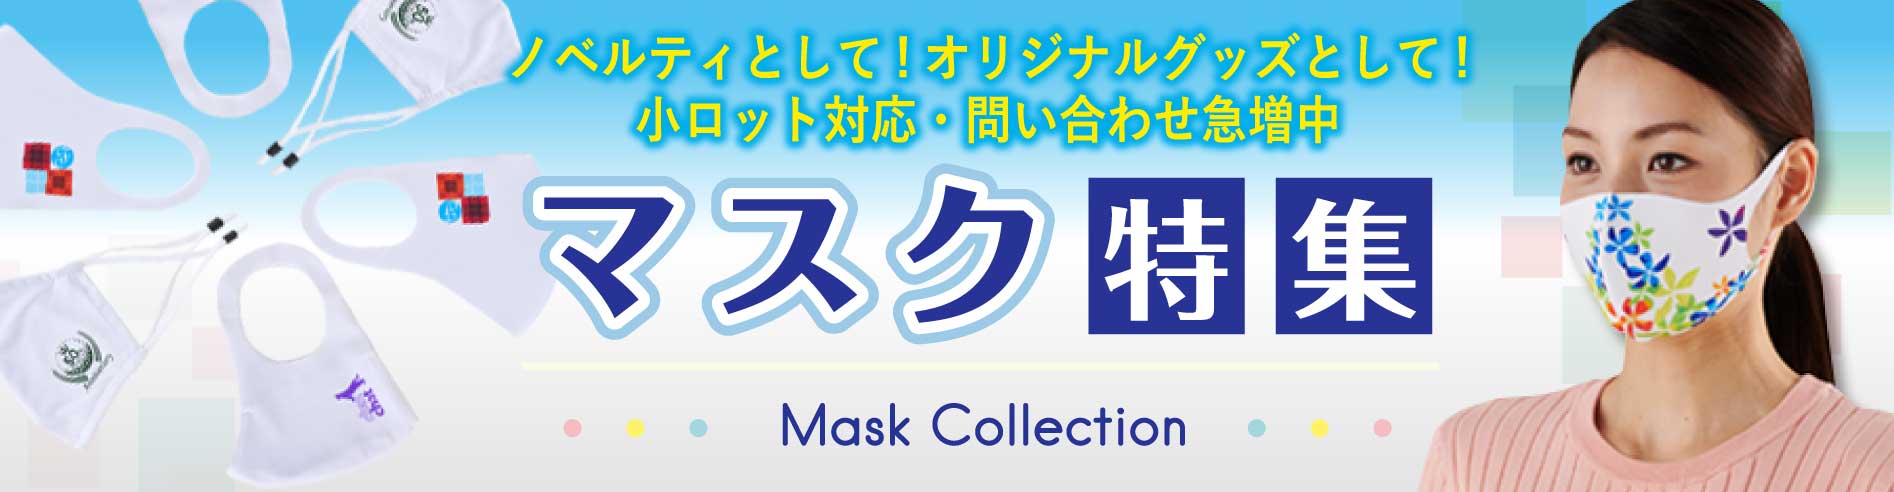 マスク特集 Mask Collection